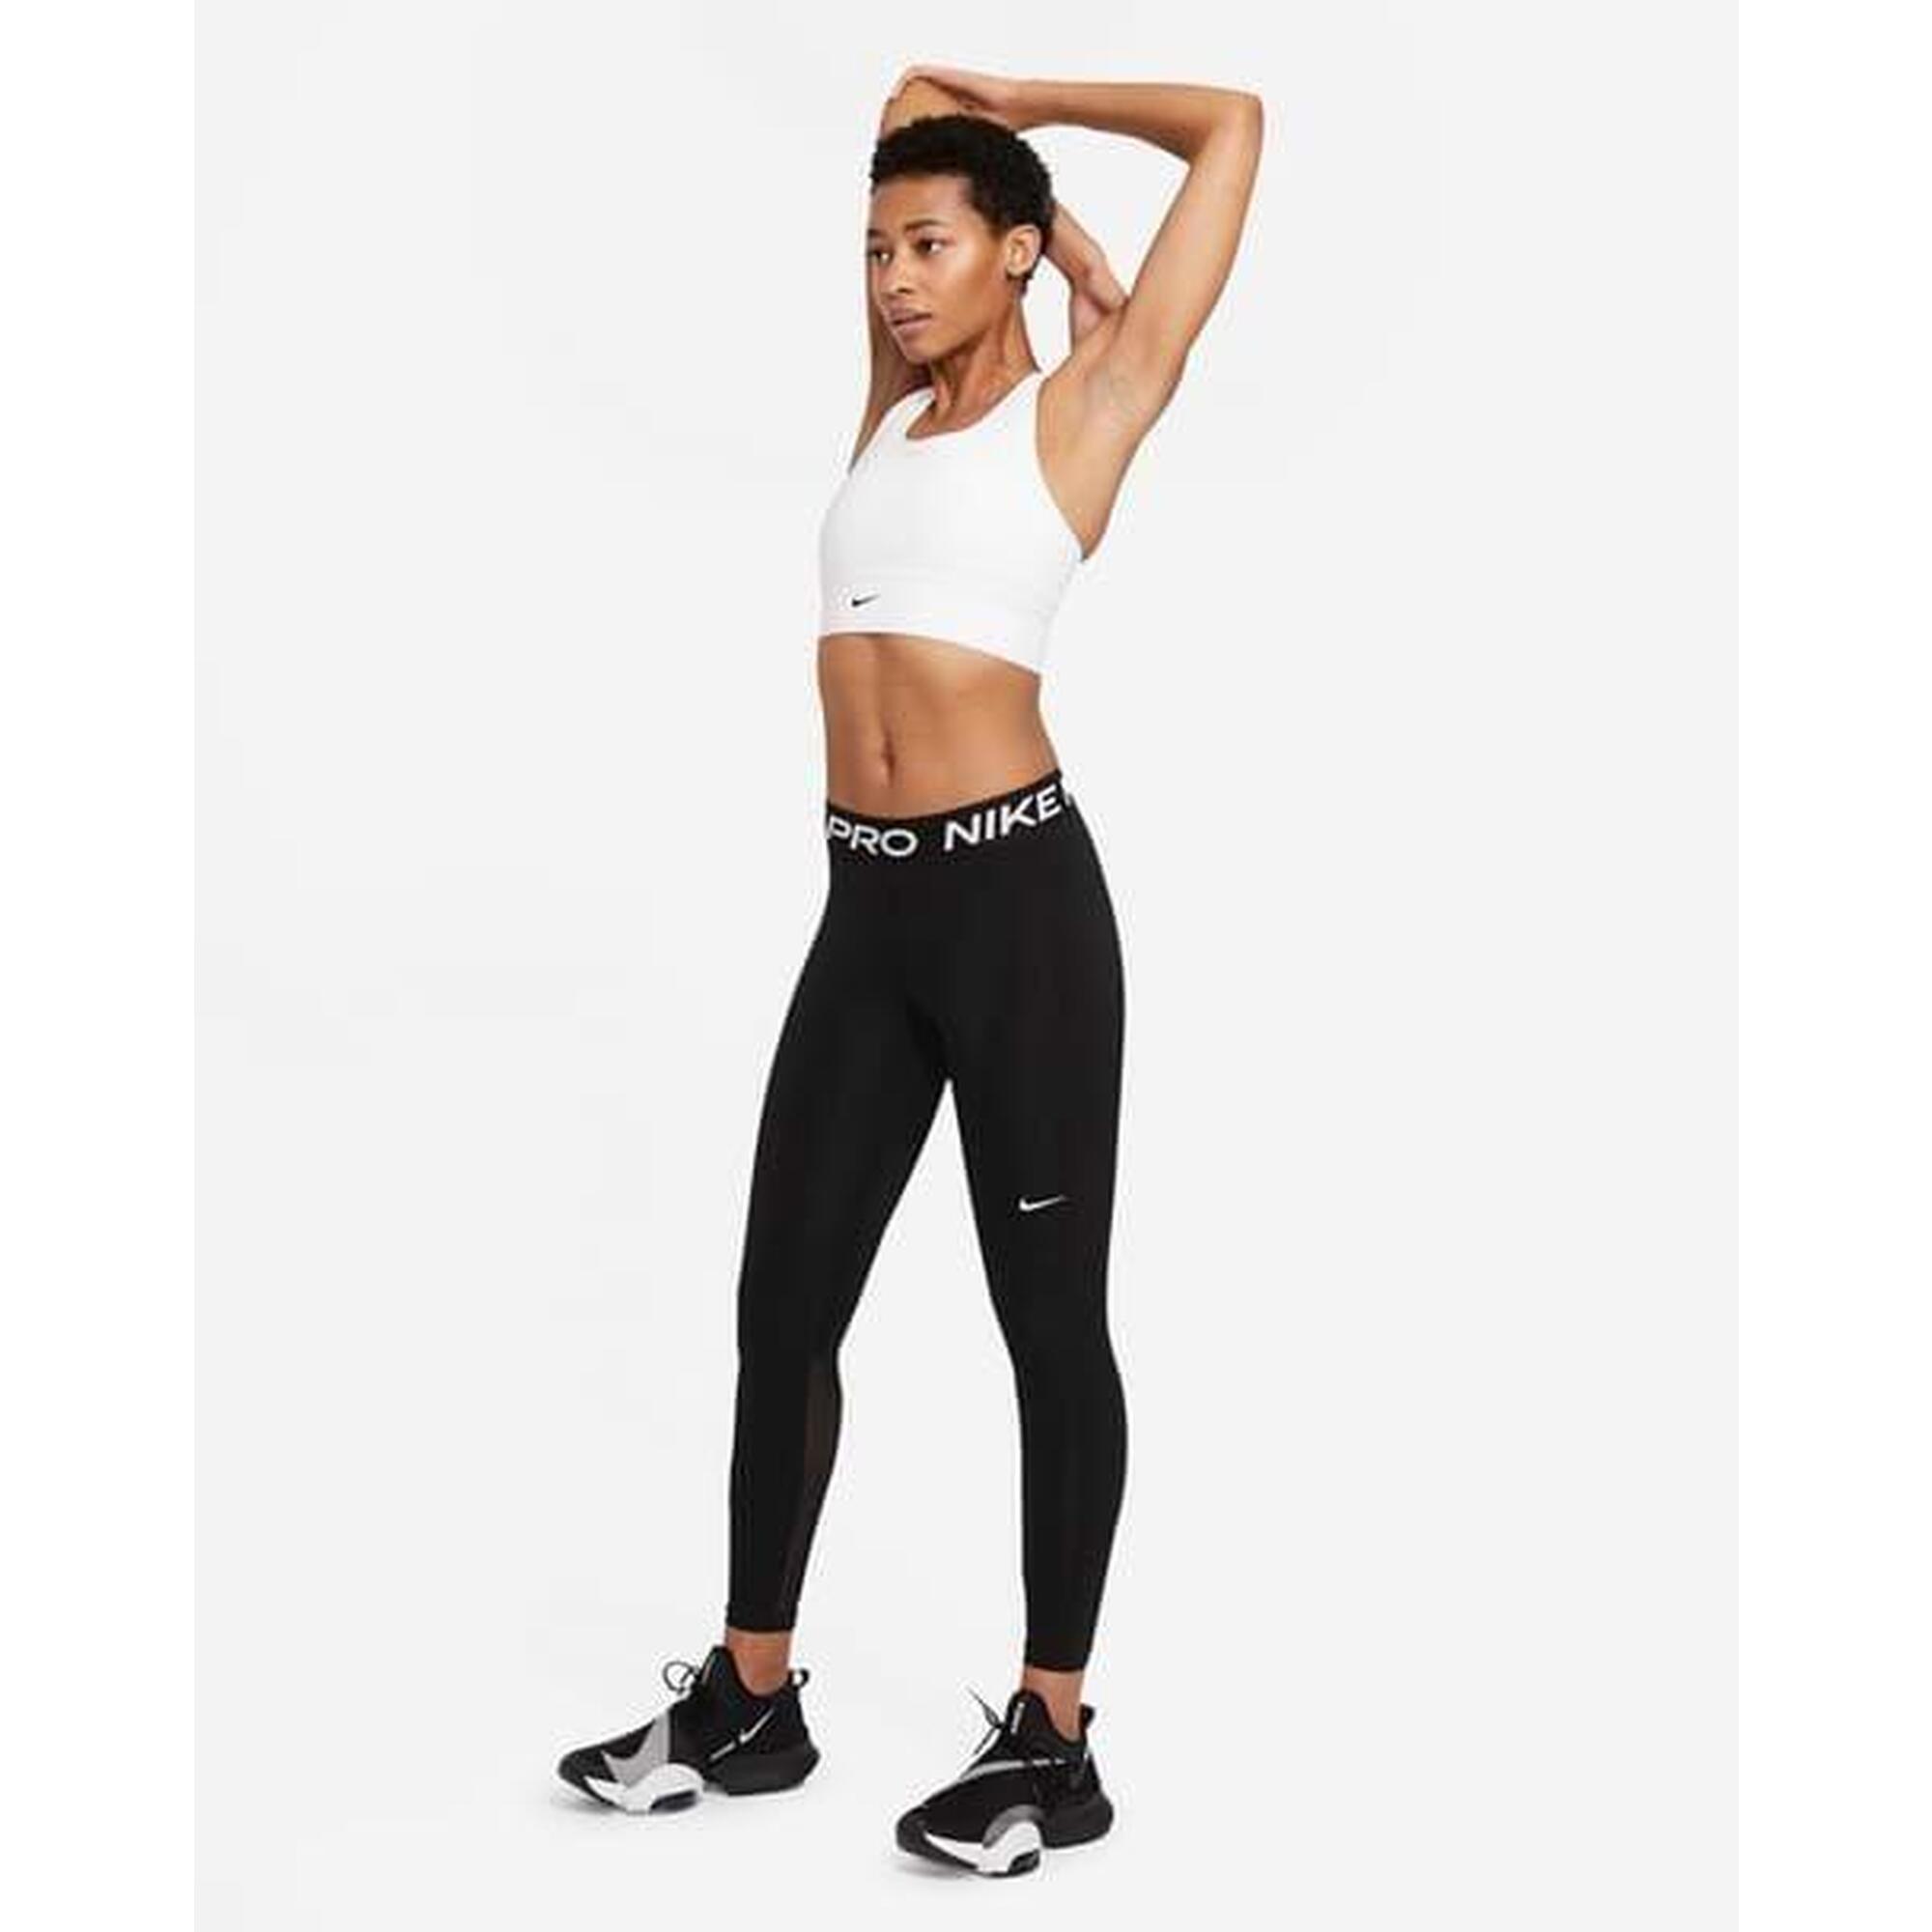 Nike WMNS Pro 365 Tight treningowe leginsy damskie do biegania